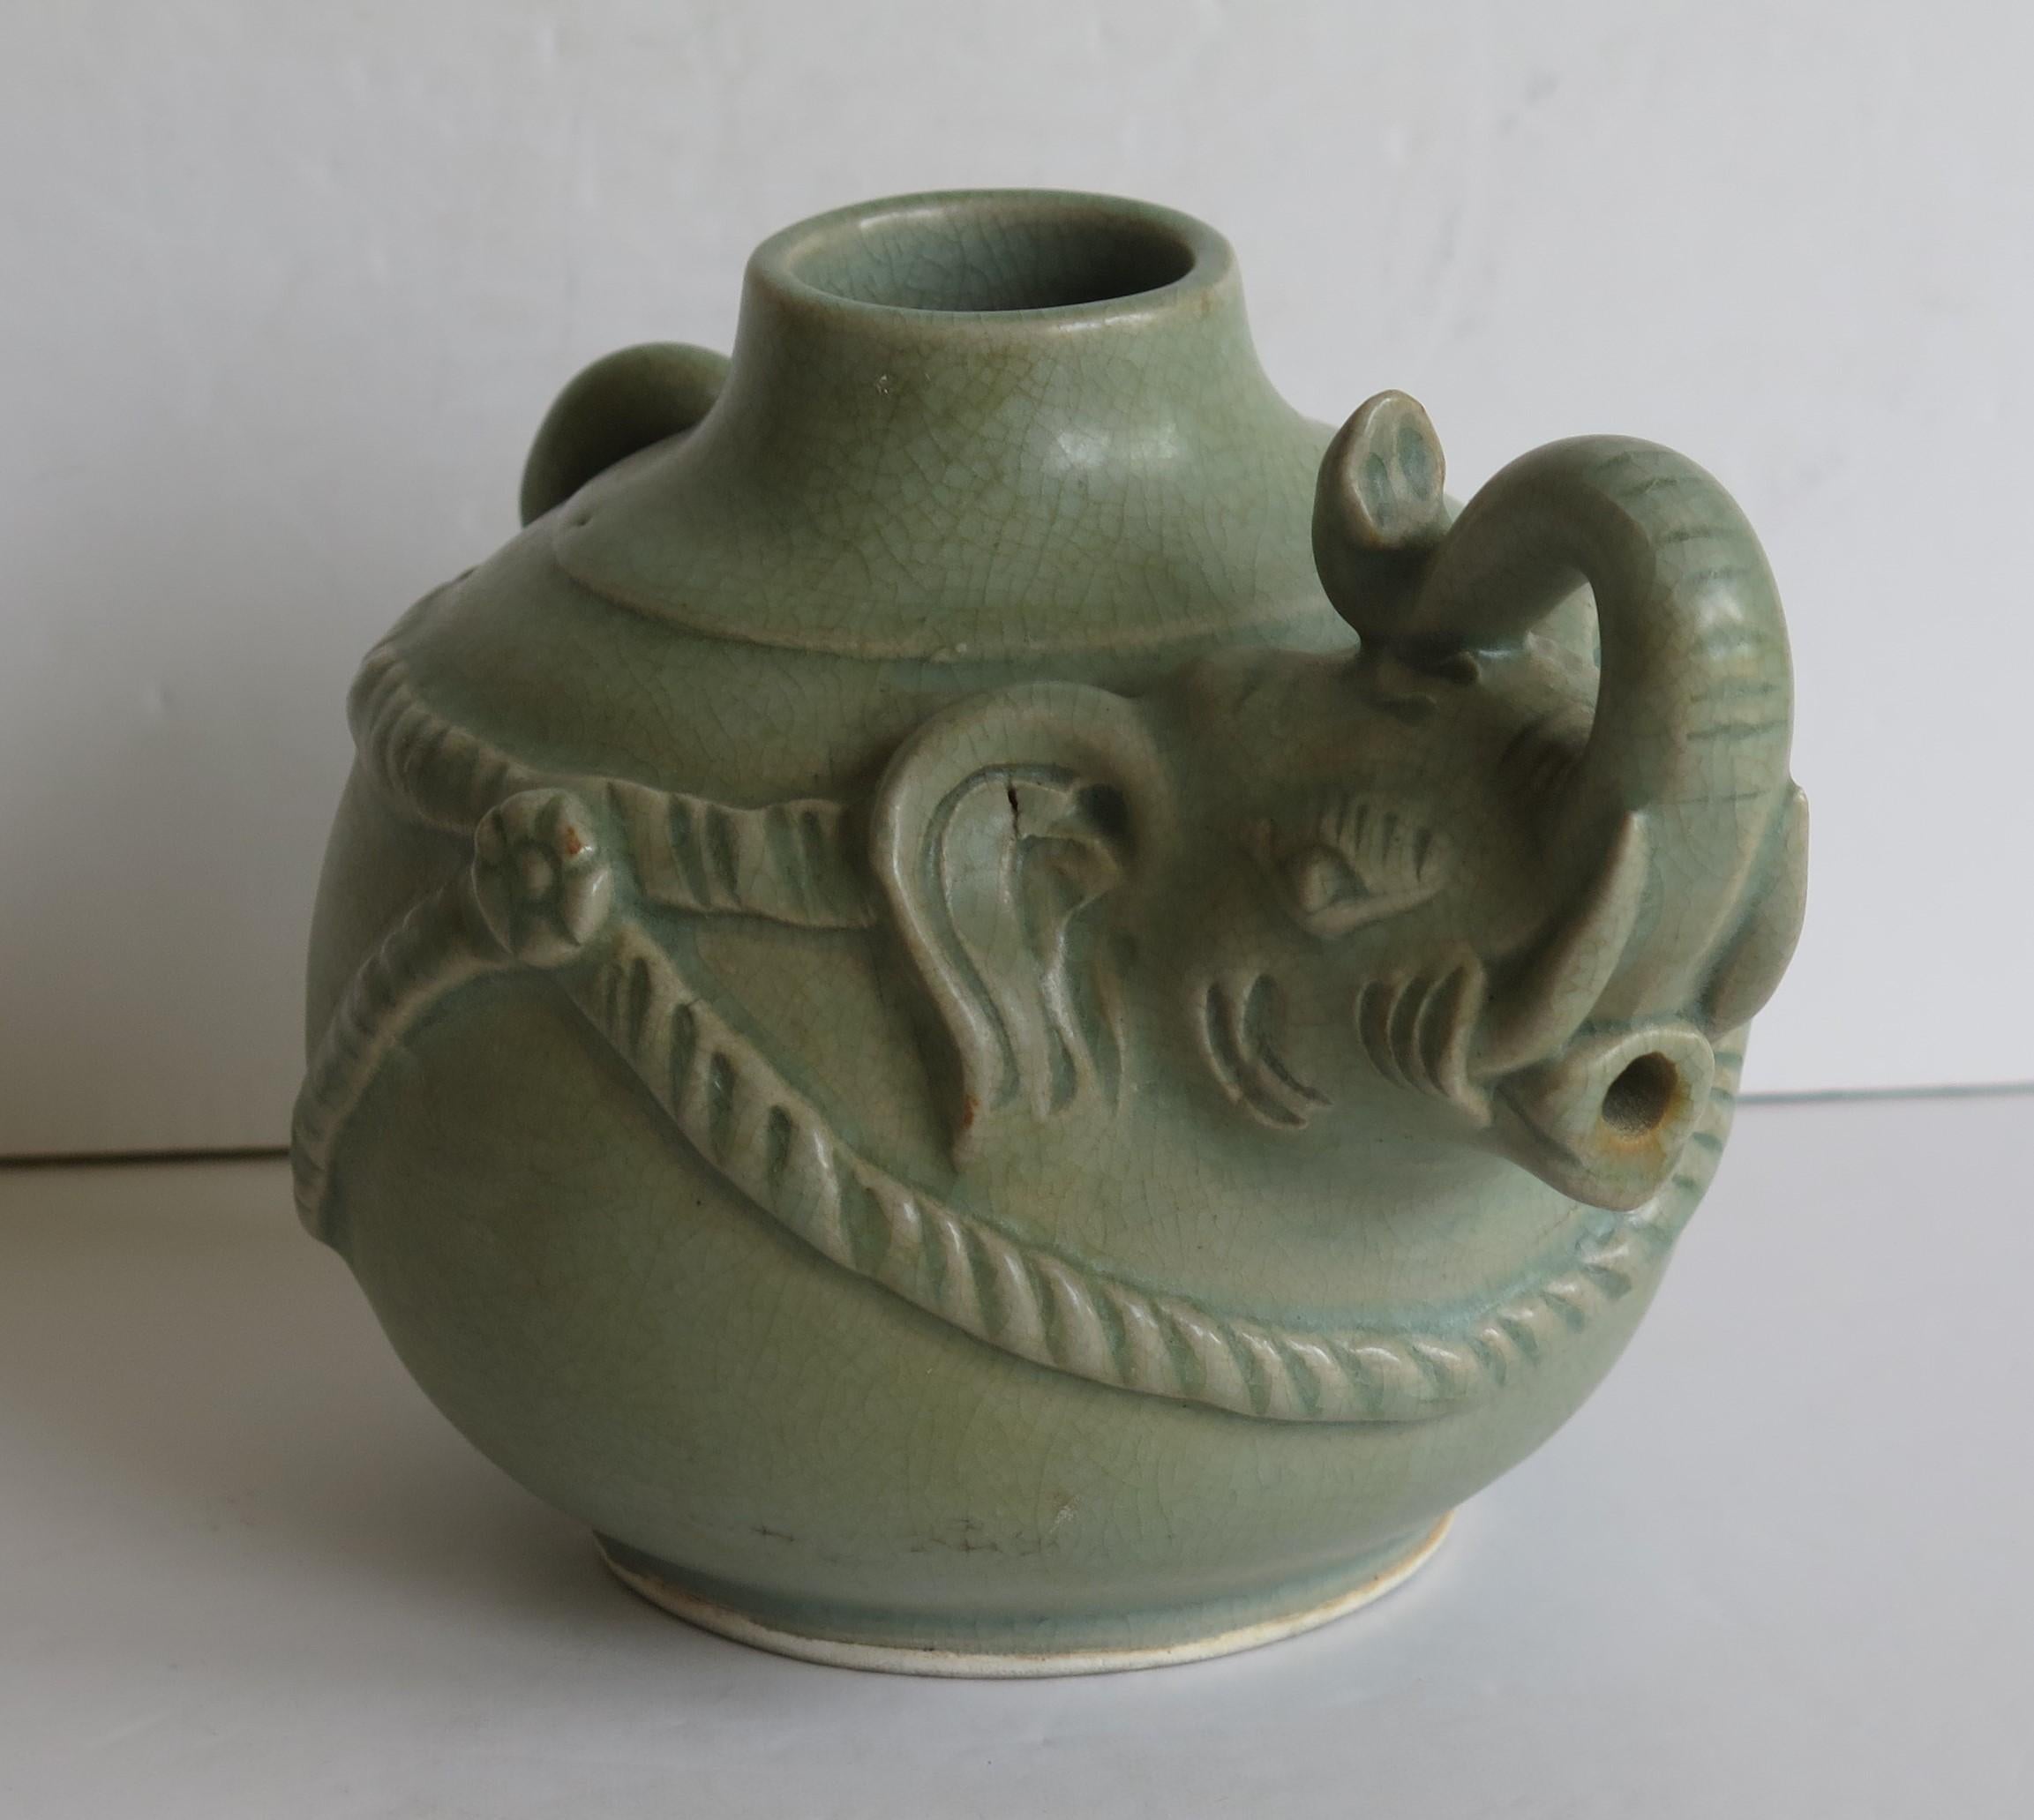 elephant shaped teapot